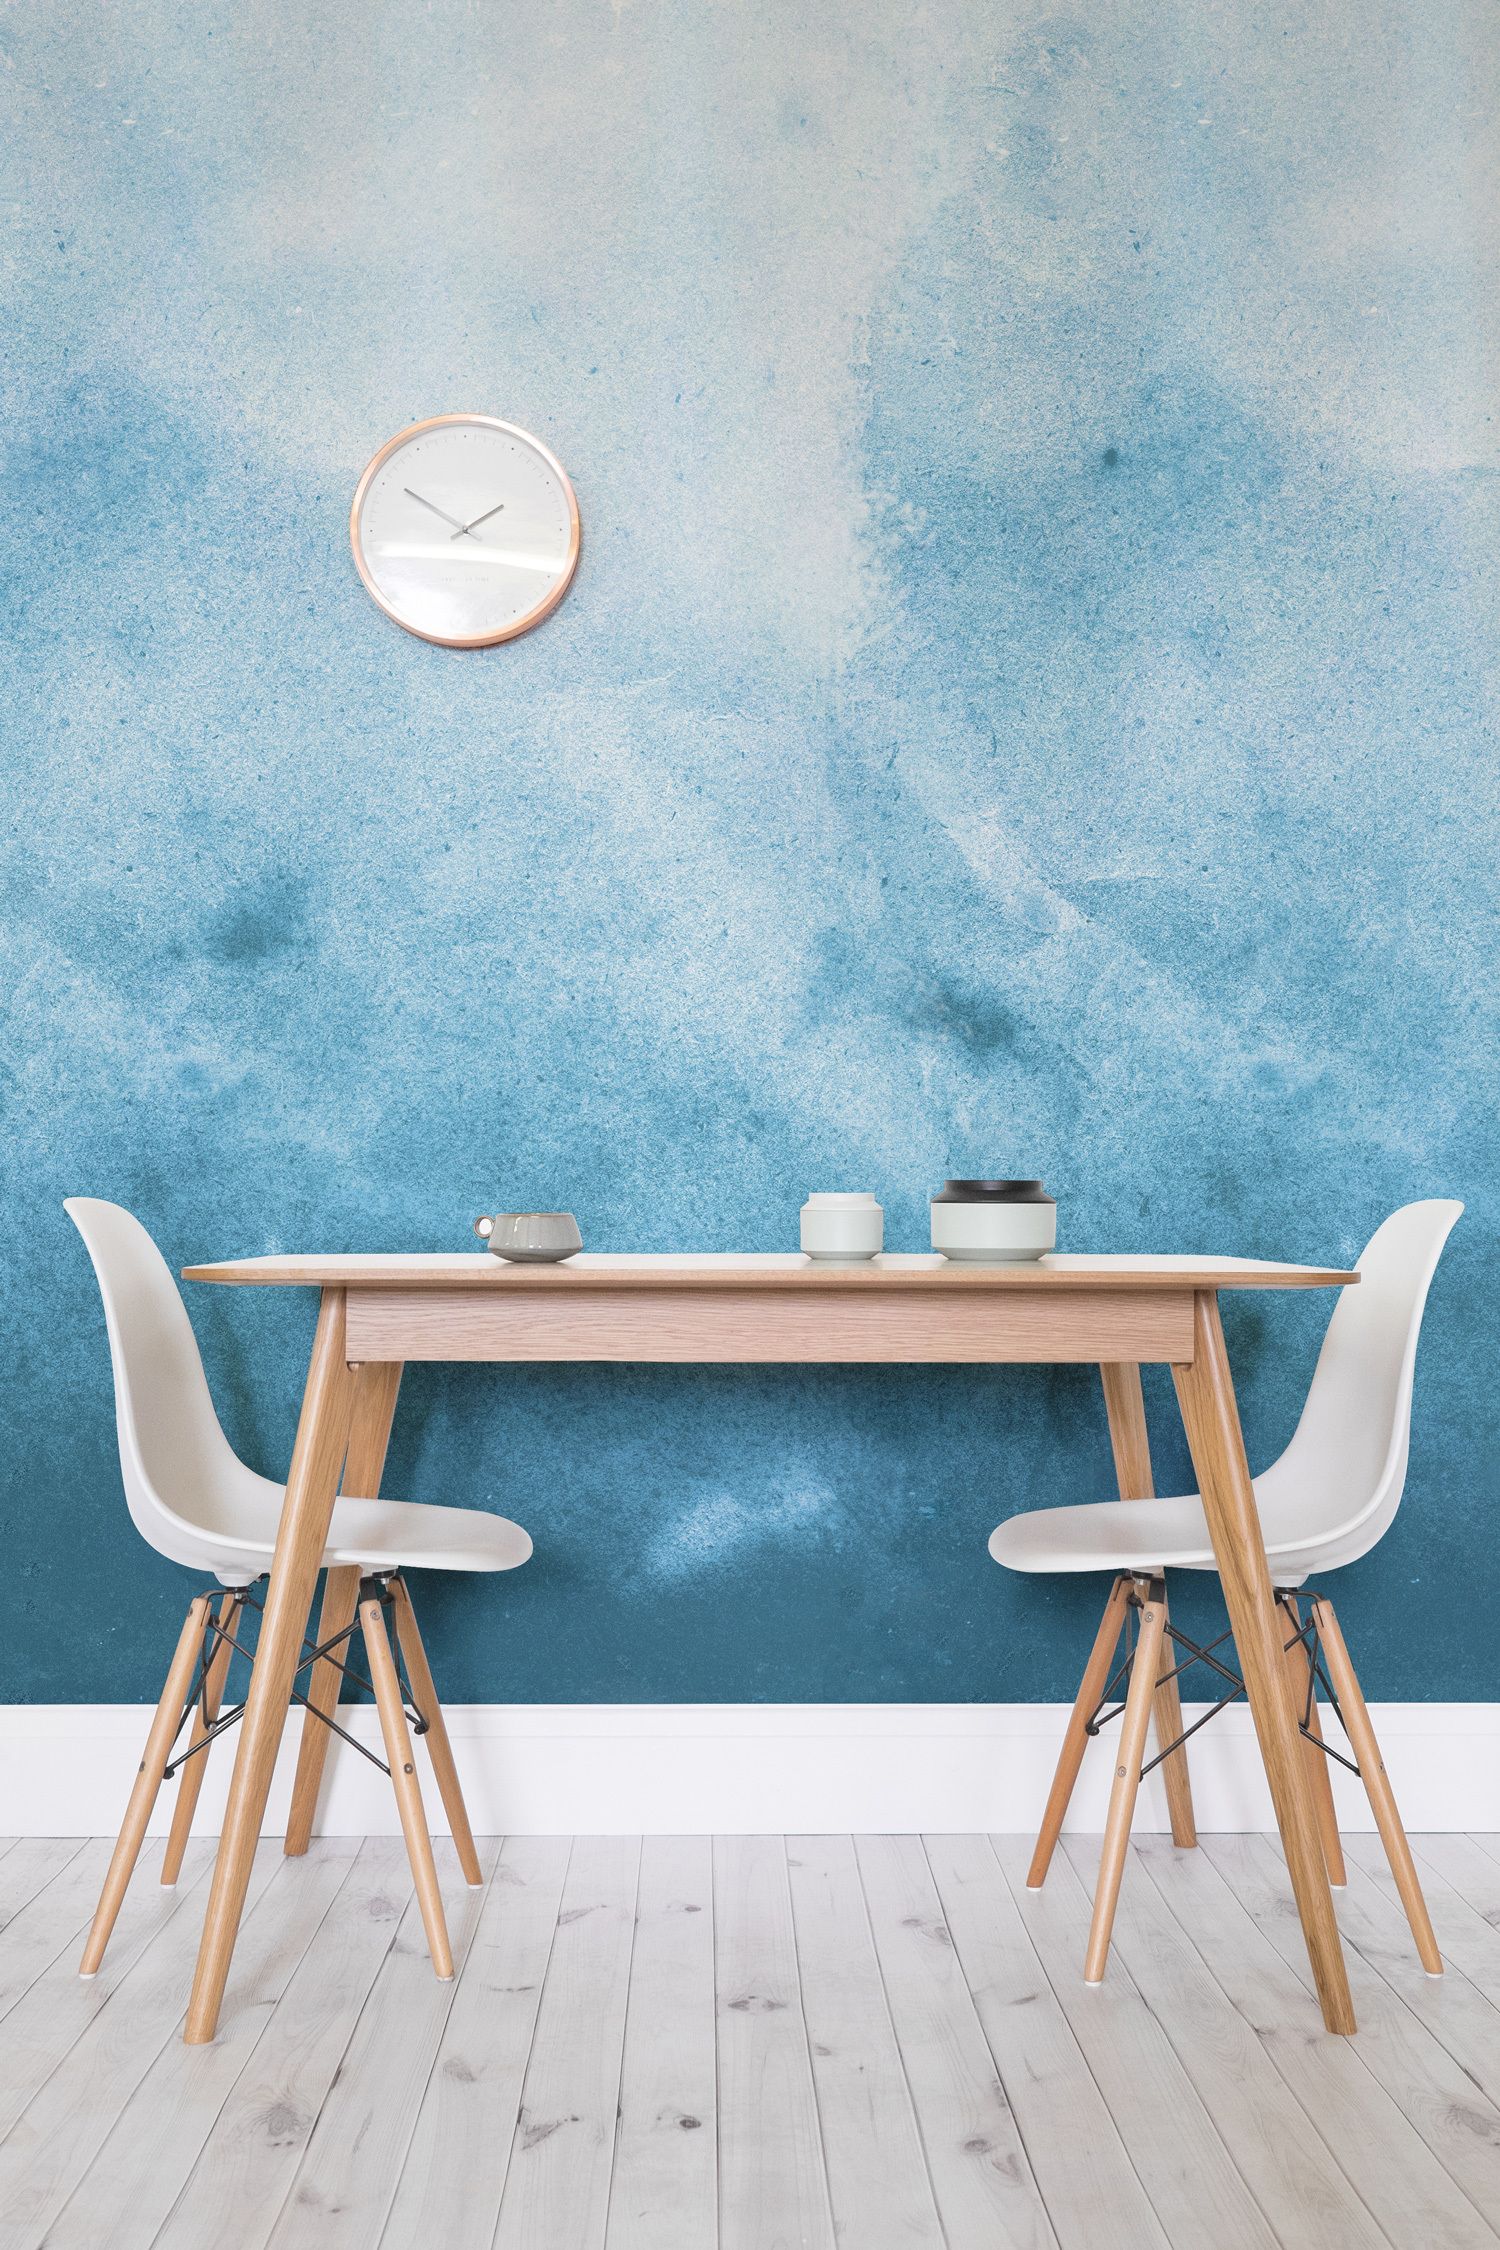 aquarell tapete für wände,möbel,blau,tabelle,wand,zimmer